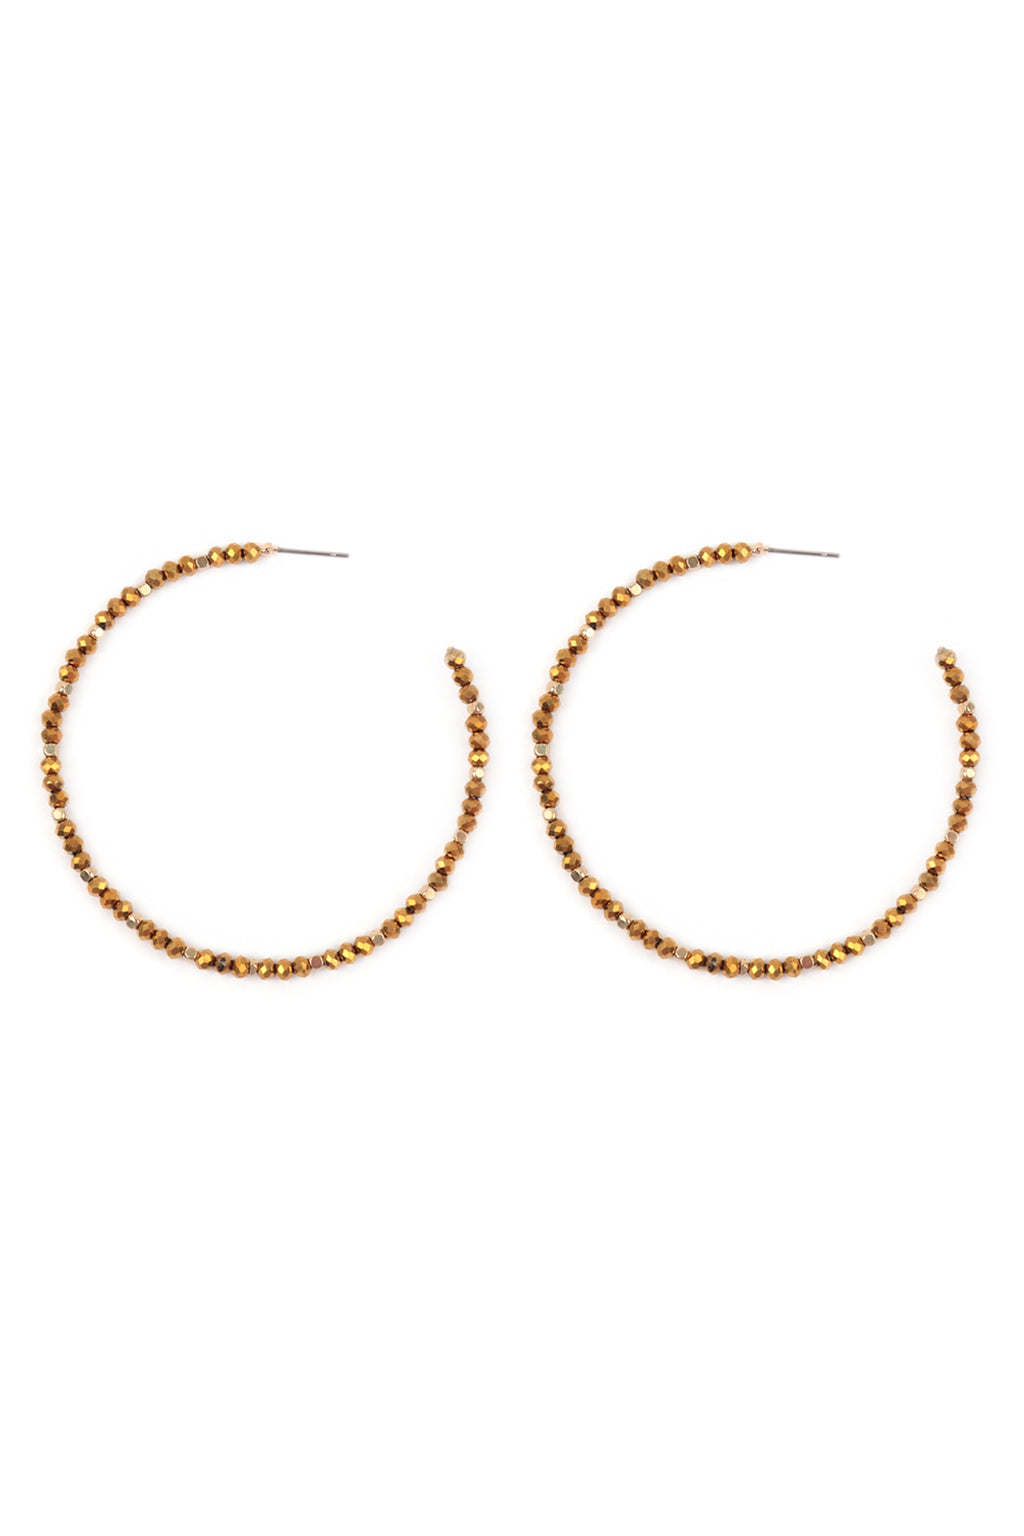 Rondelle Beads Hoop Earrings Gold - Pack of 6